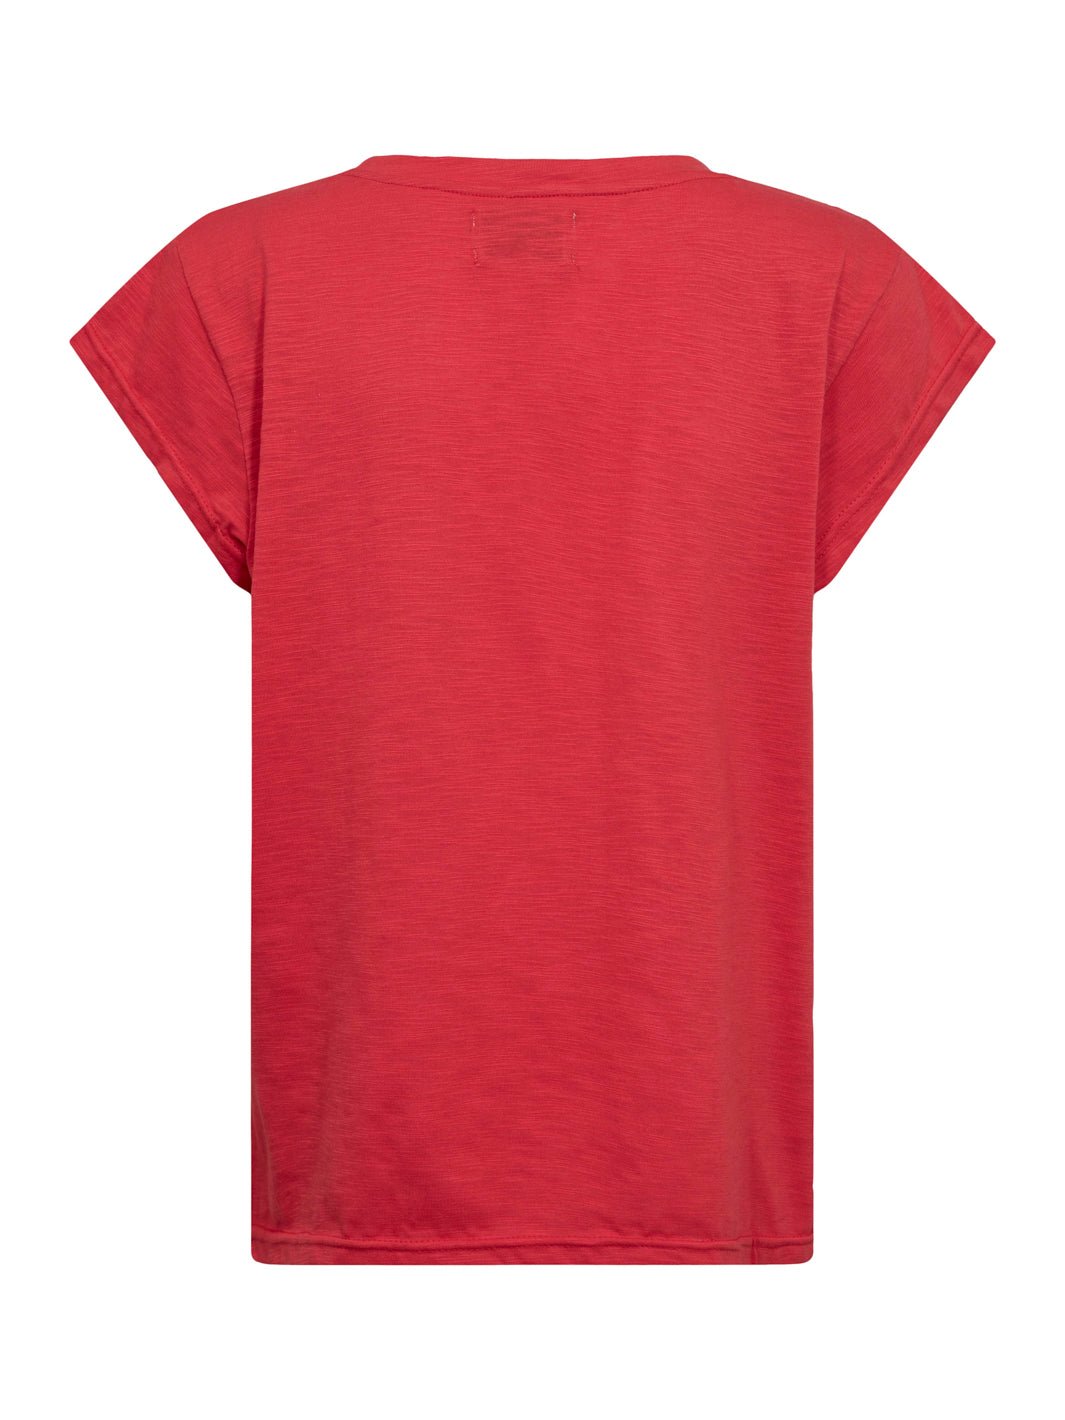 Liberté Ulla t-shirt red - Online-Mode